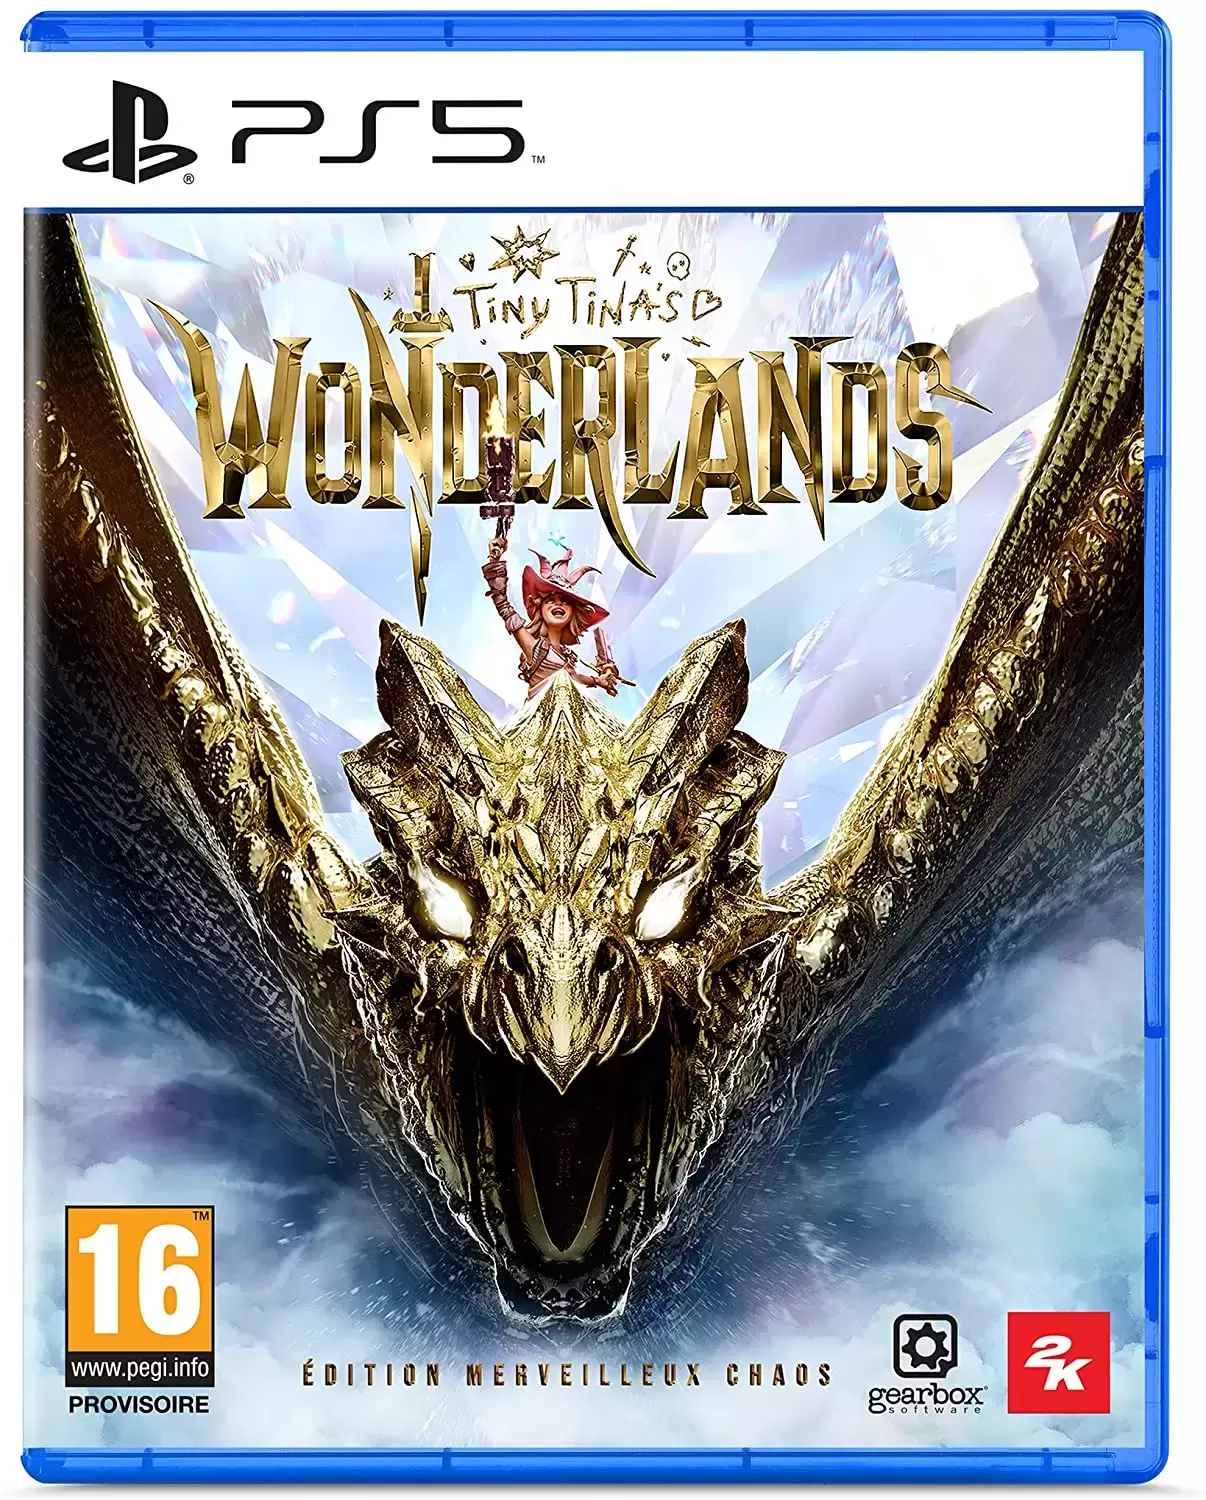 PS5 Games - Tiny Tina\'s Wonderlands Edition Merveilleux Chaos